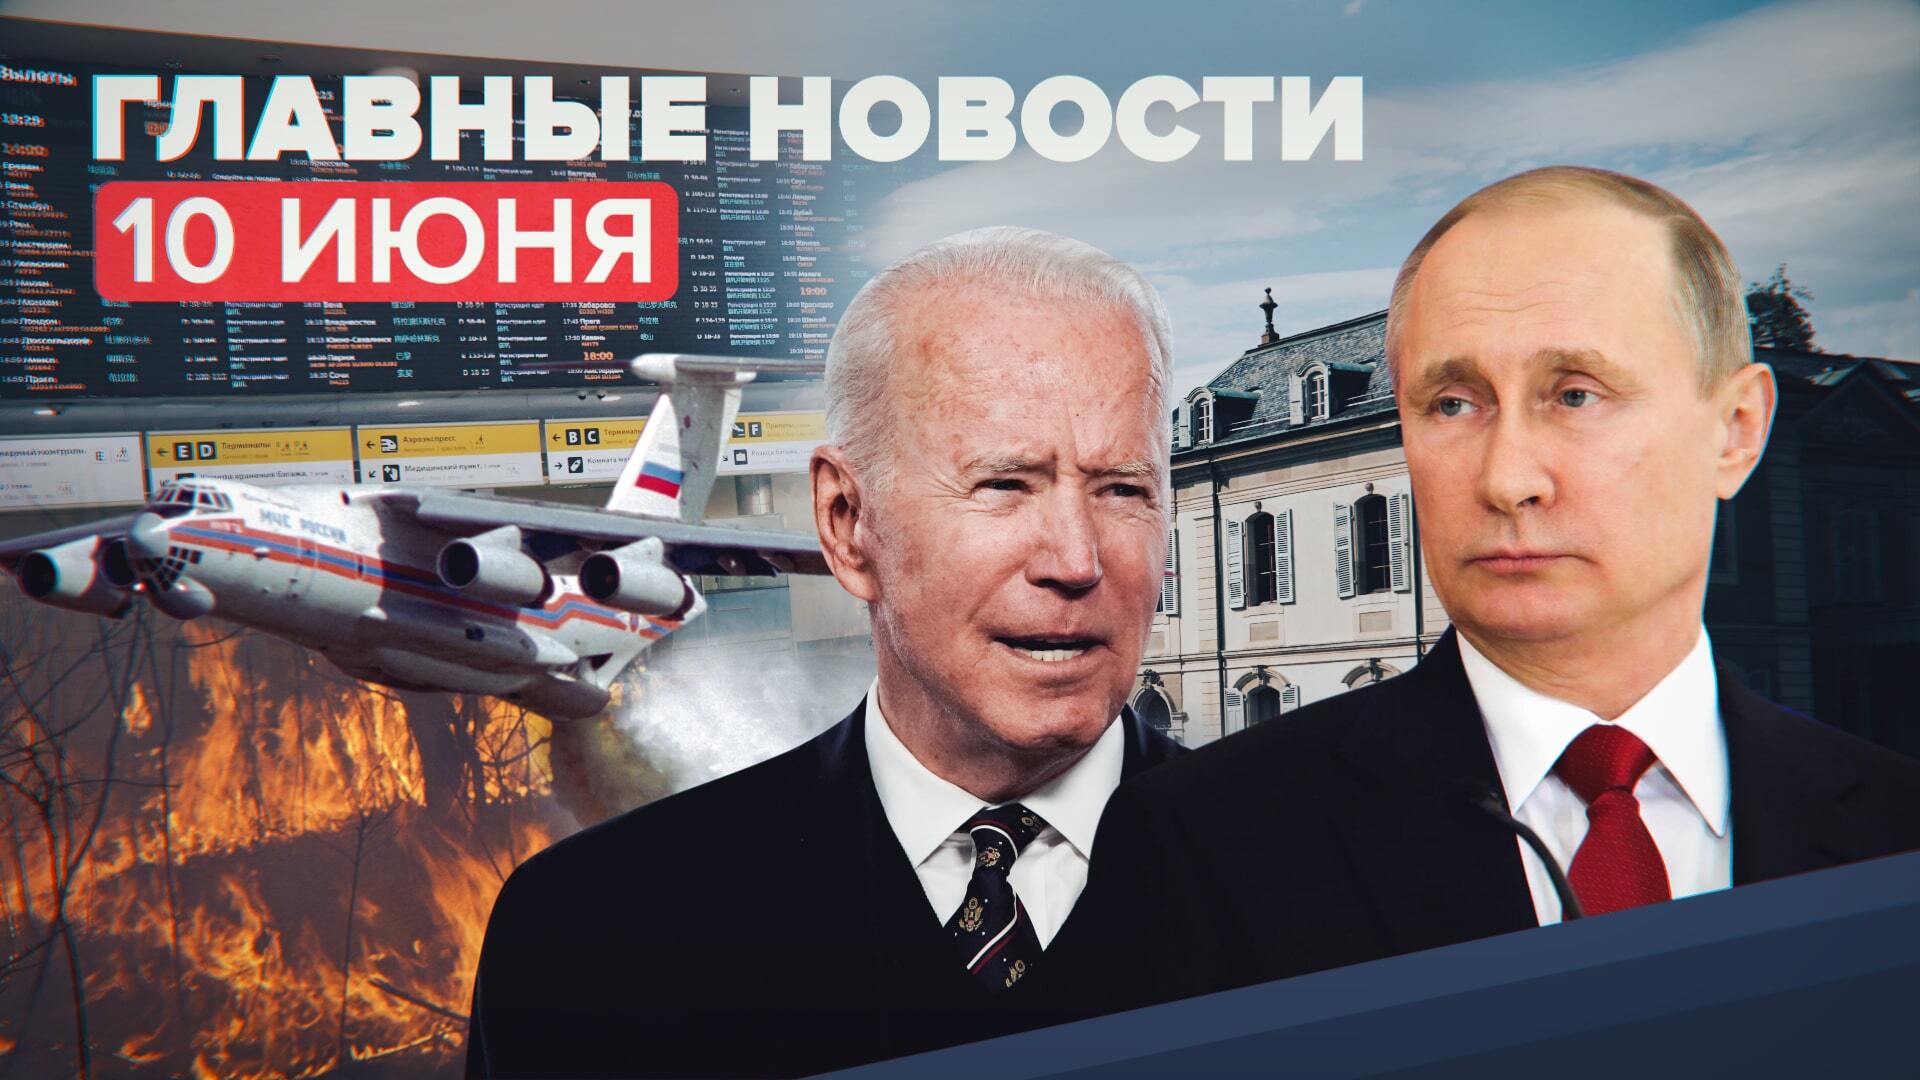 Новости дня — 10 июня: предстоящая встреча Путина и Байдена, открытие границ, штраф FB и Telegram